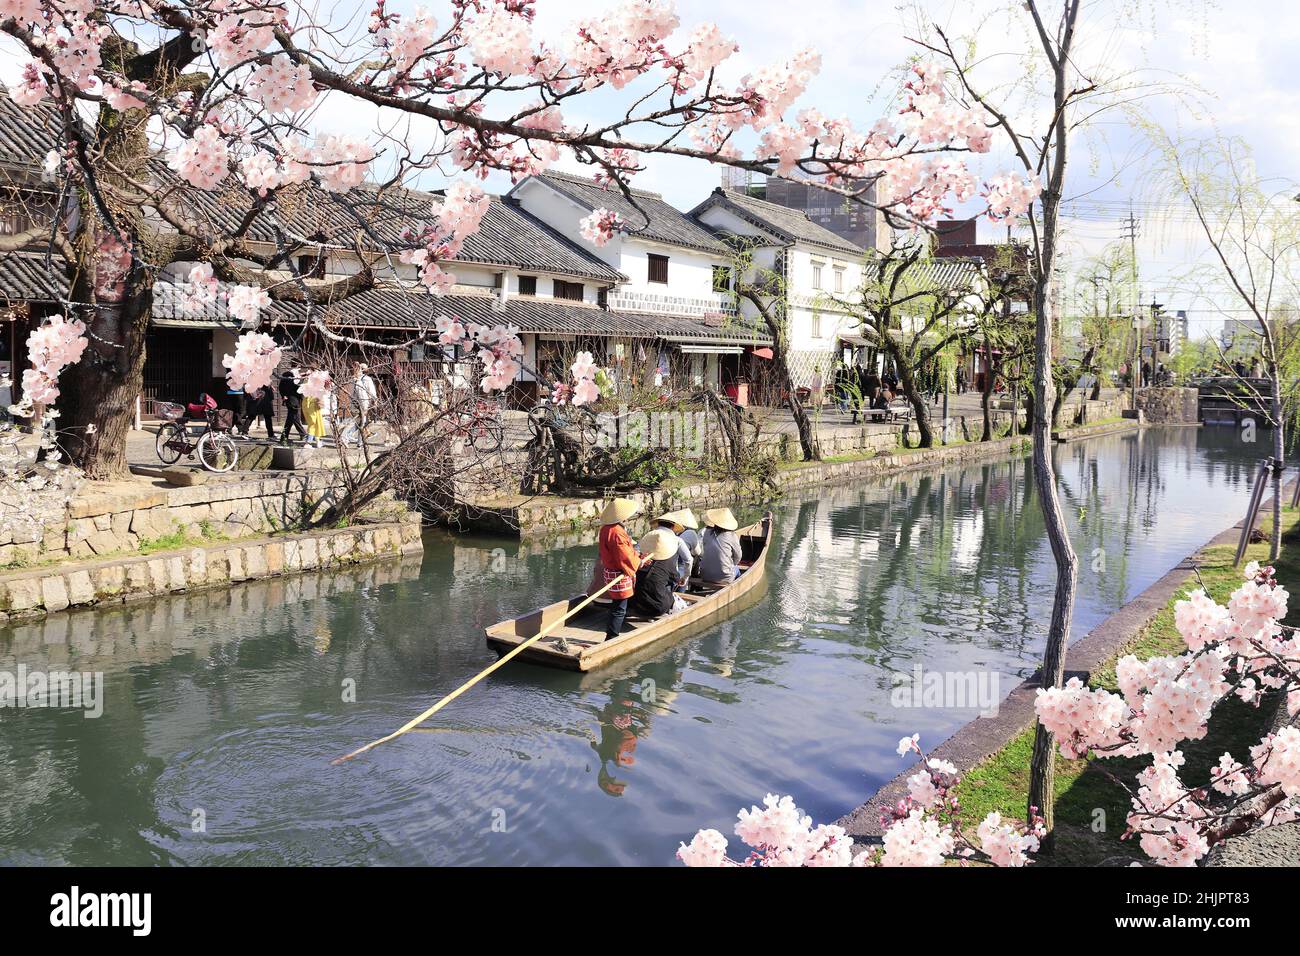 Persone in barca vecchio stile e fiori sakura, canale Kurashiki nel distretto di Bikan, Kurashiki città, Giappone. Festival hanami giapponese - tempo quando la gente Foto Stock